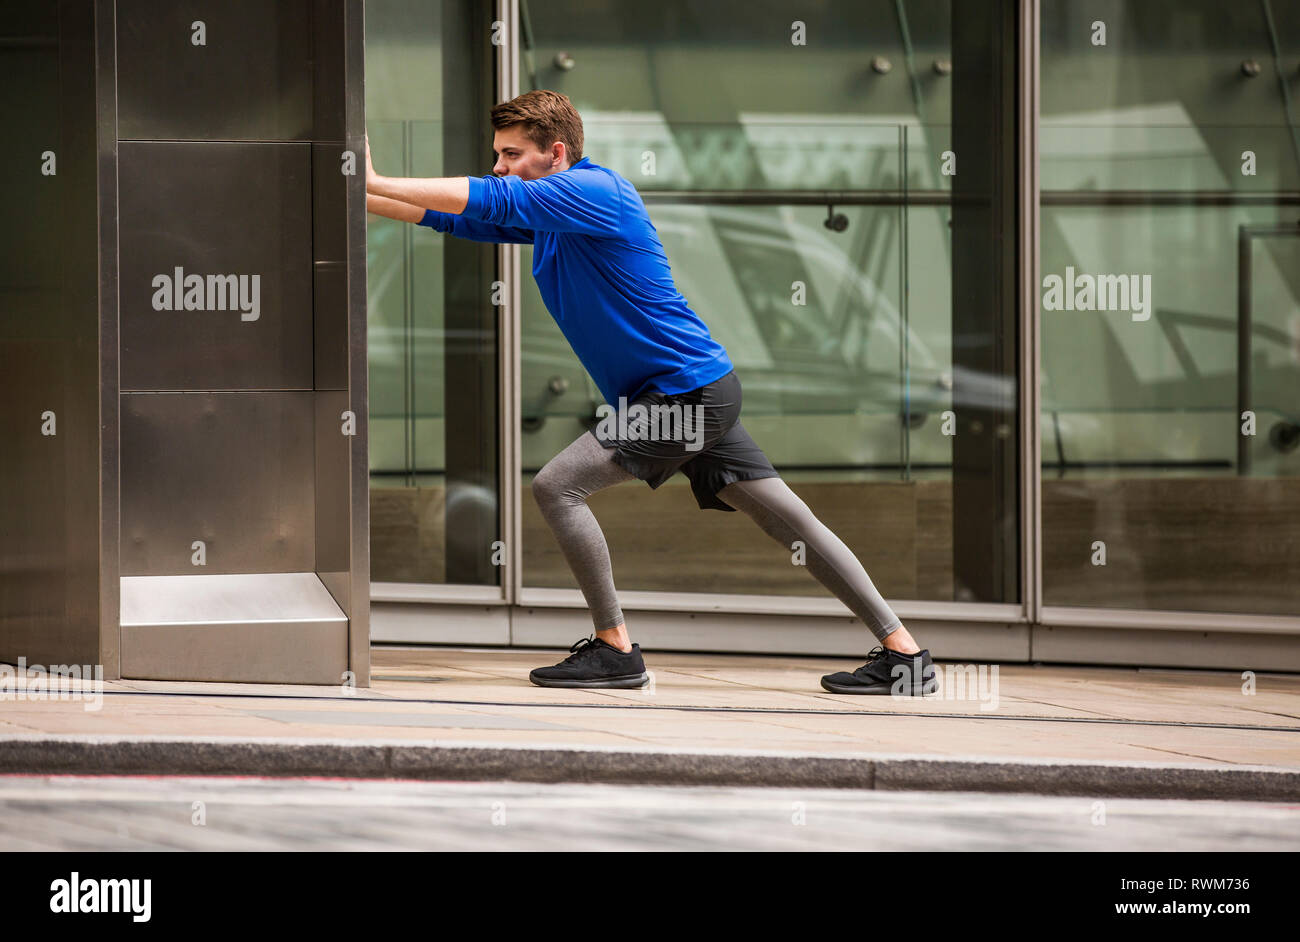 Giovani runner stretching sul marciapiede, London, Regno Unito Foto Stock